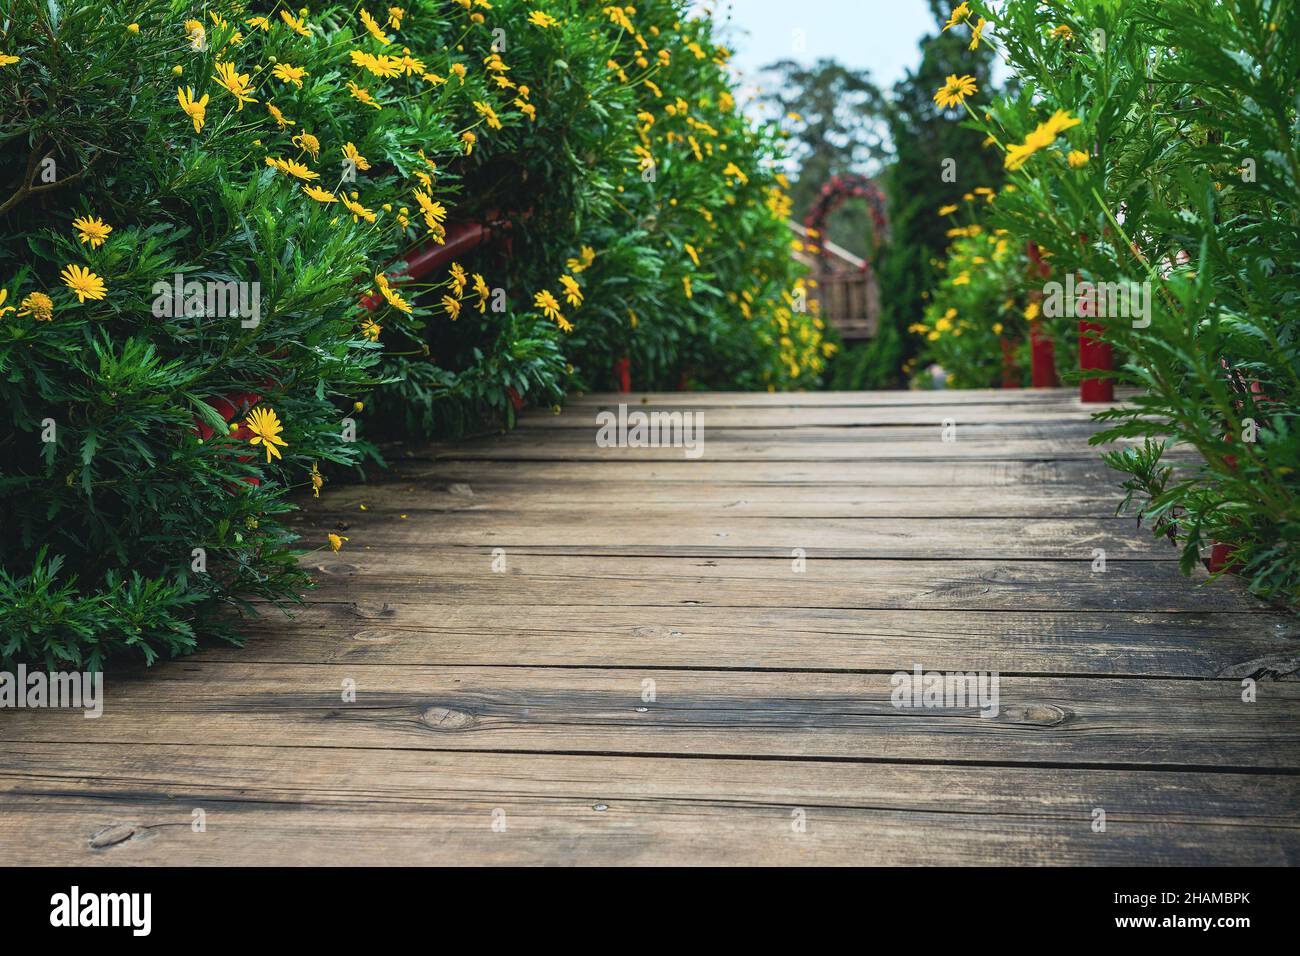 Eine hölzerne Gartenbrücke zwischen blühenden Blumensträuchen. Wunderschöne Parkanlage. Da Lat, Vietnam Stockfoto